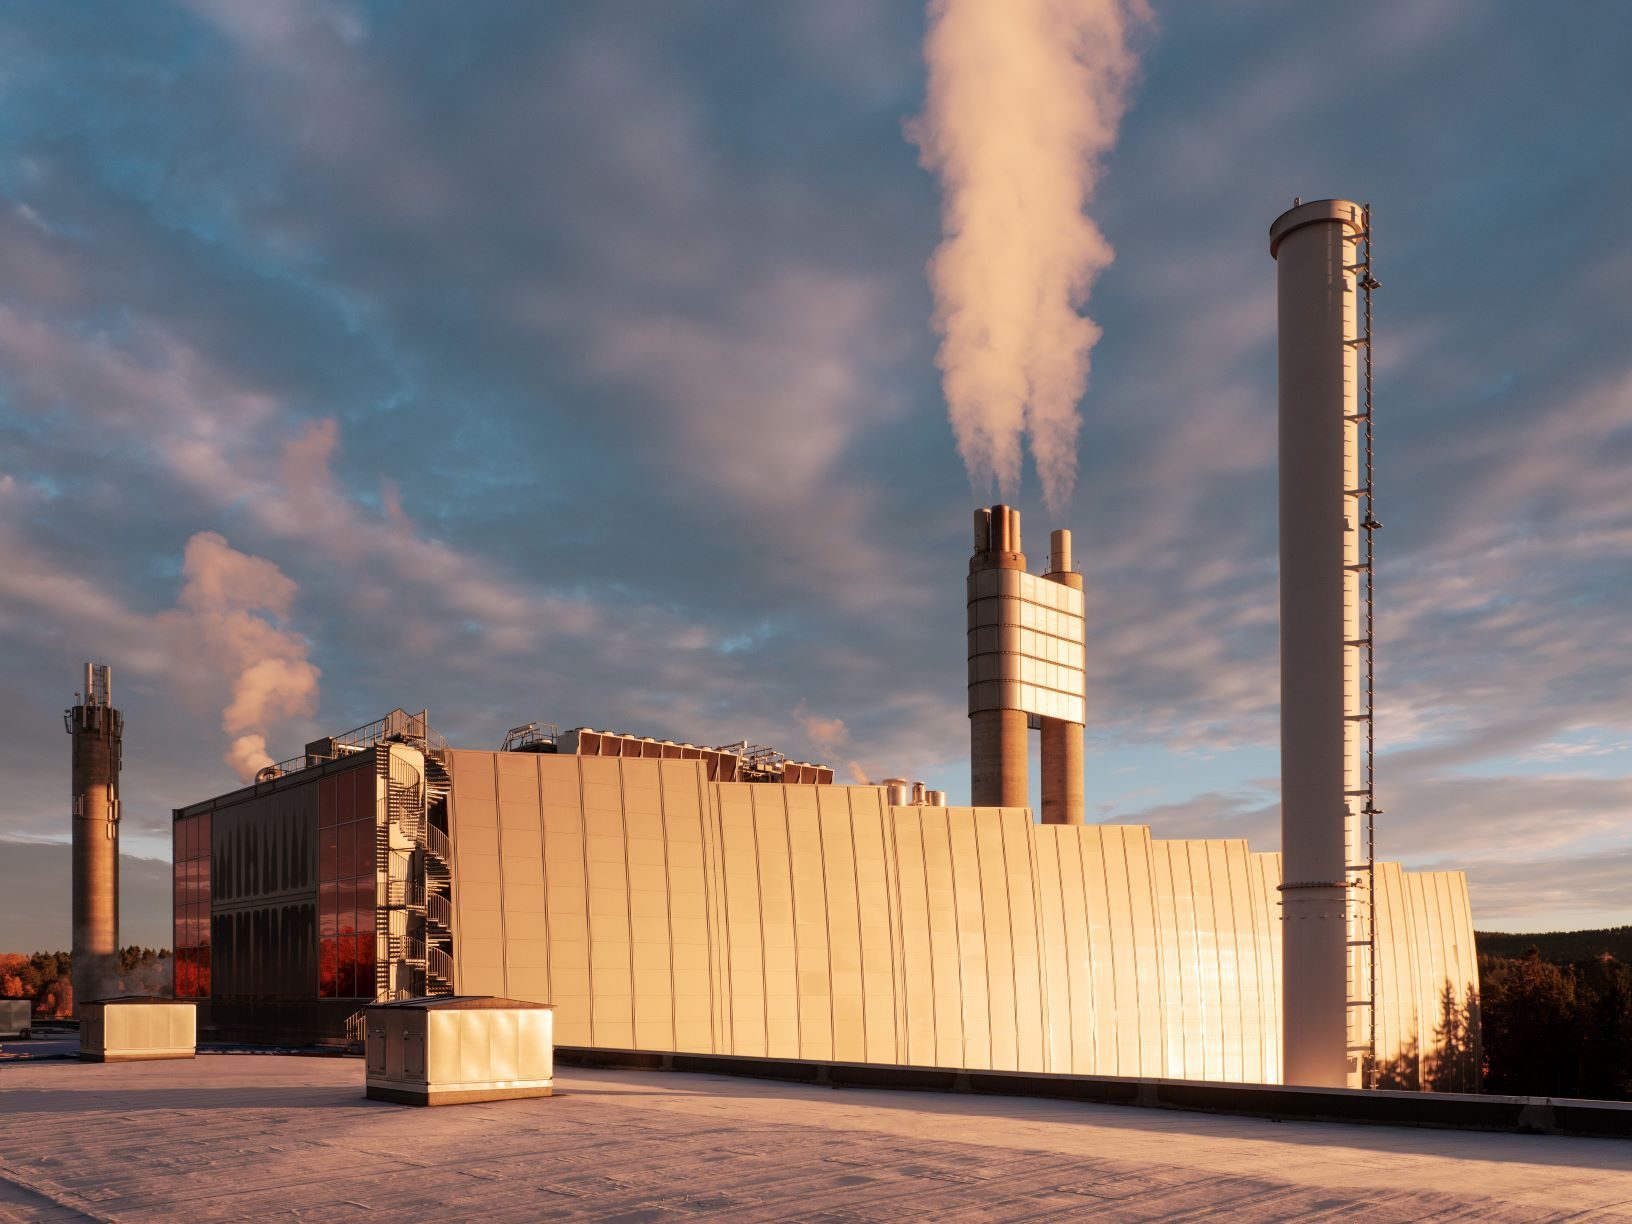 karbonfangstanlegget på Klemetsrud - fabrikkbygningen med røyk som kommer ut av pipa